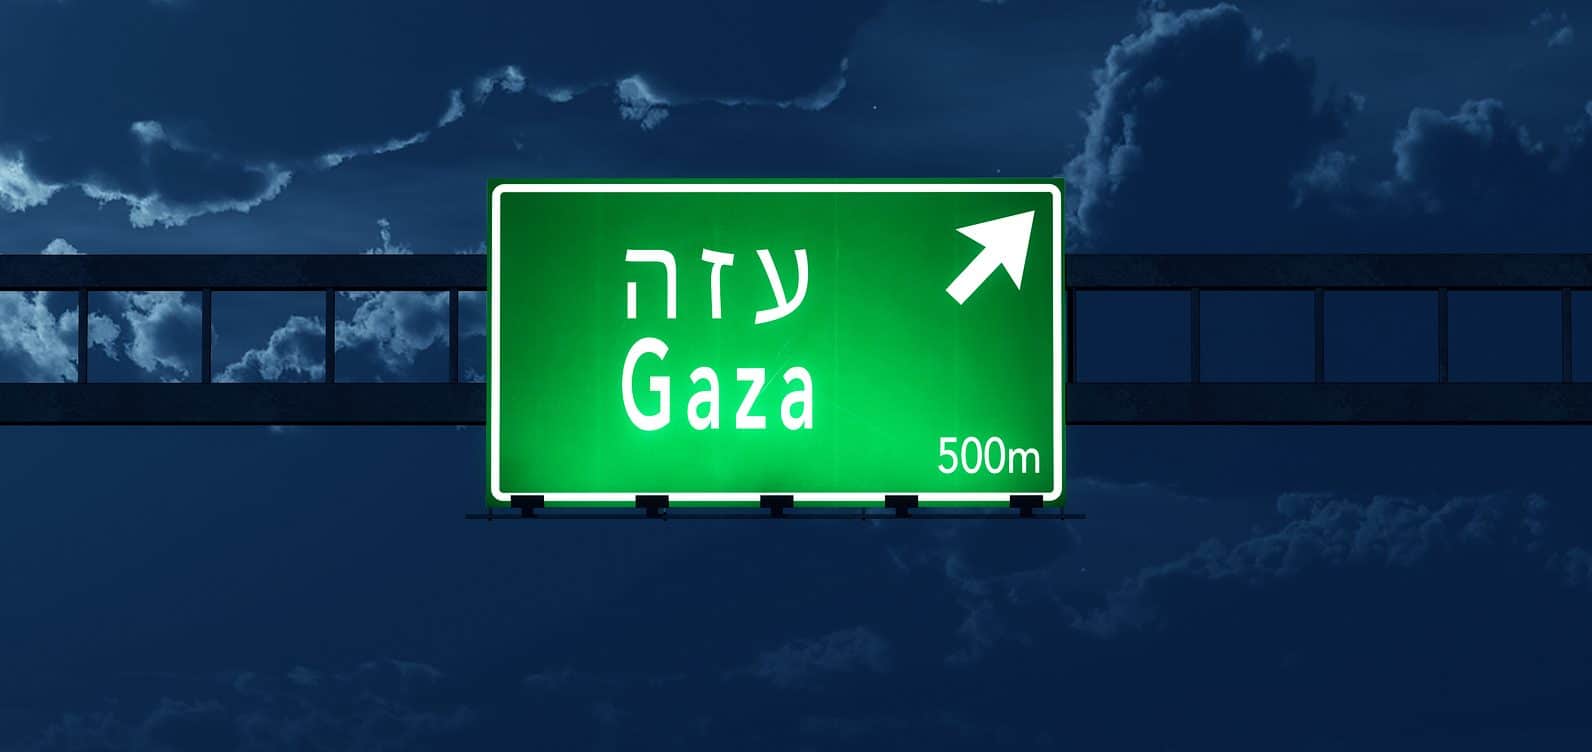 Gaza Israel Highway Road Sign At Night